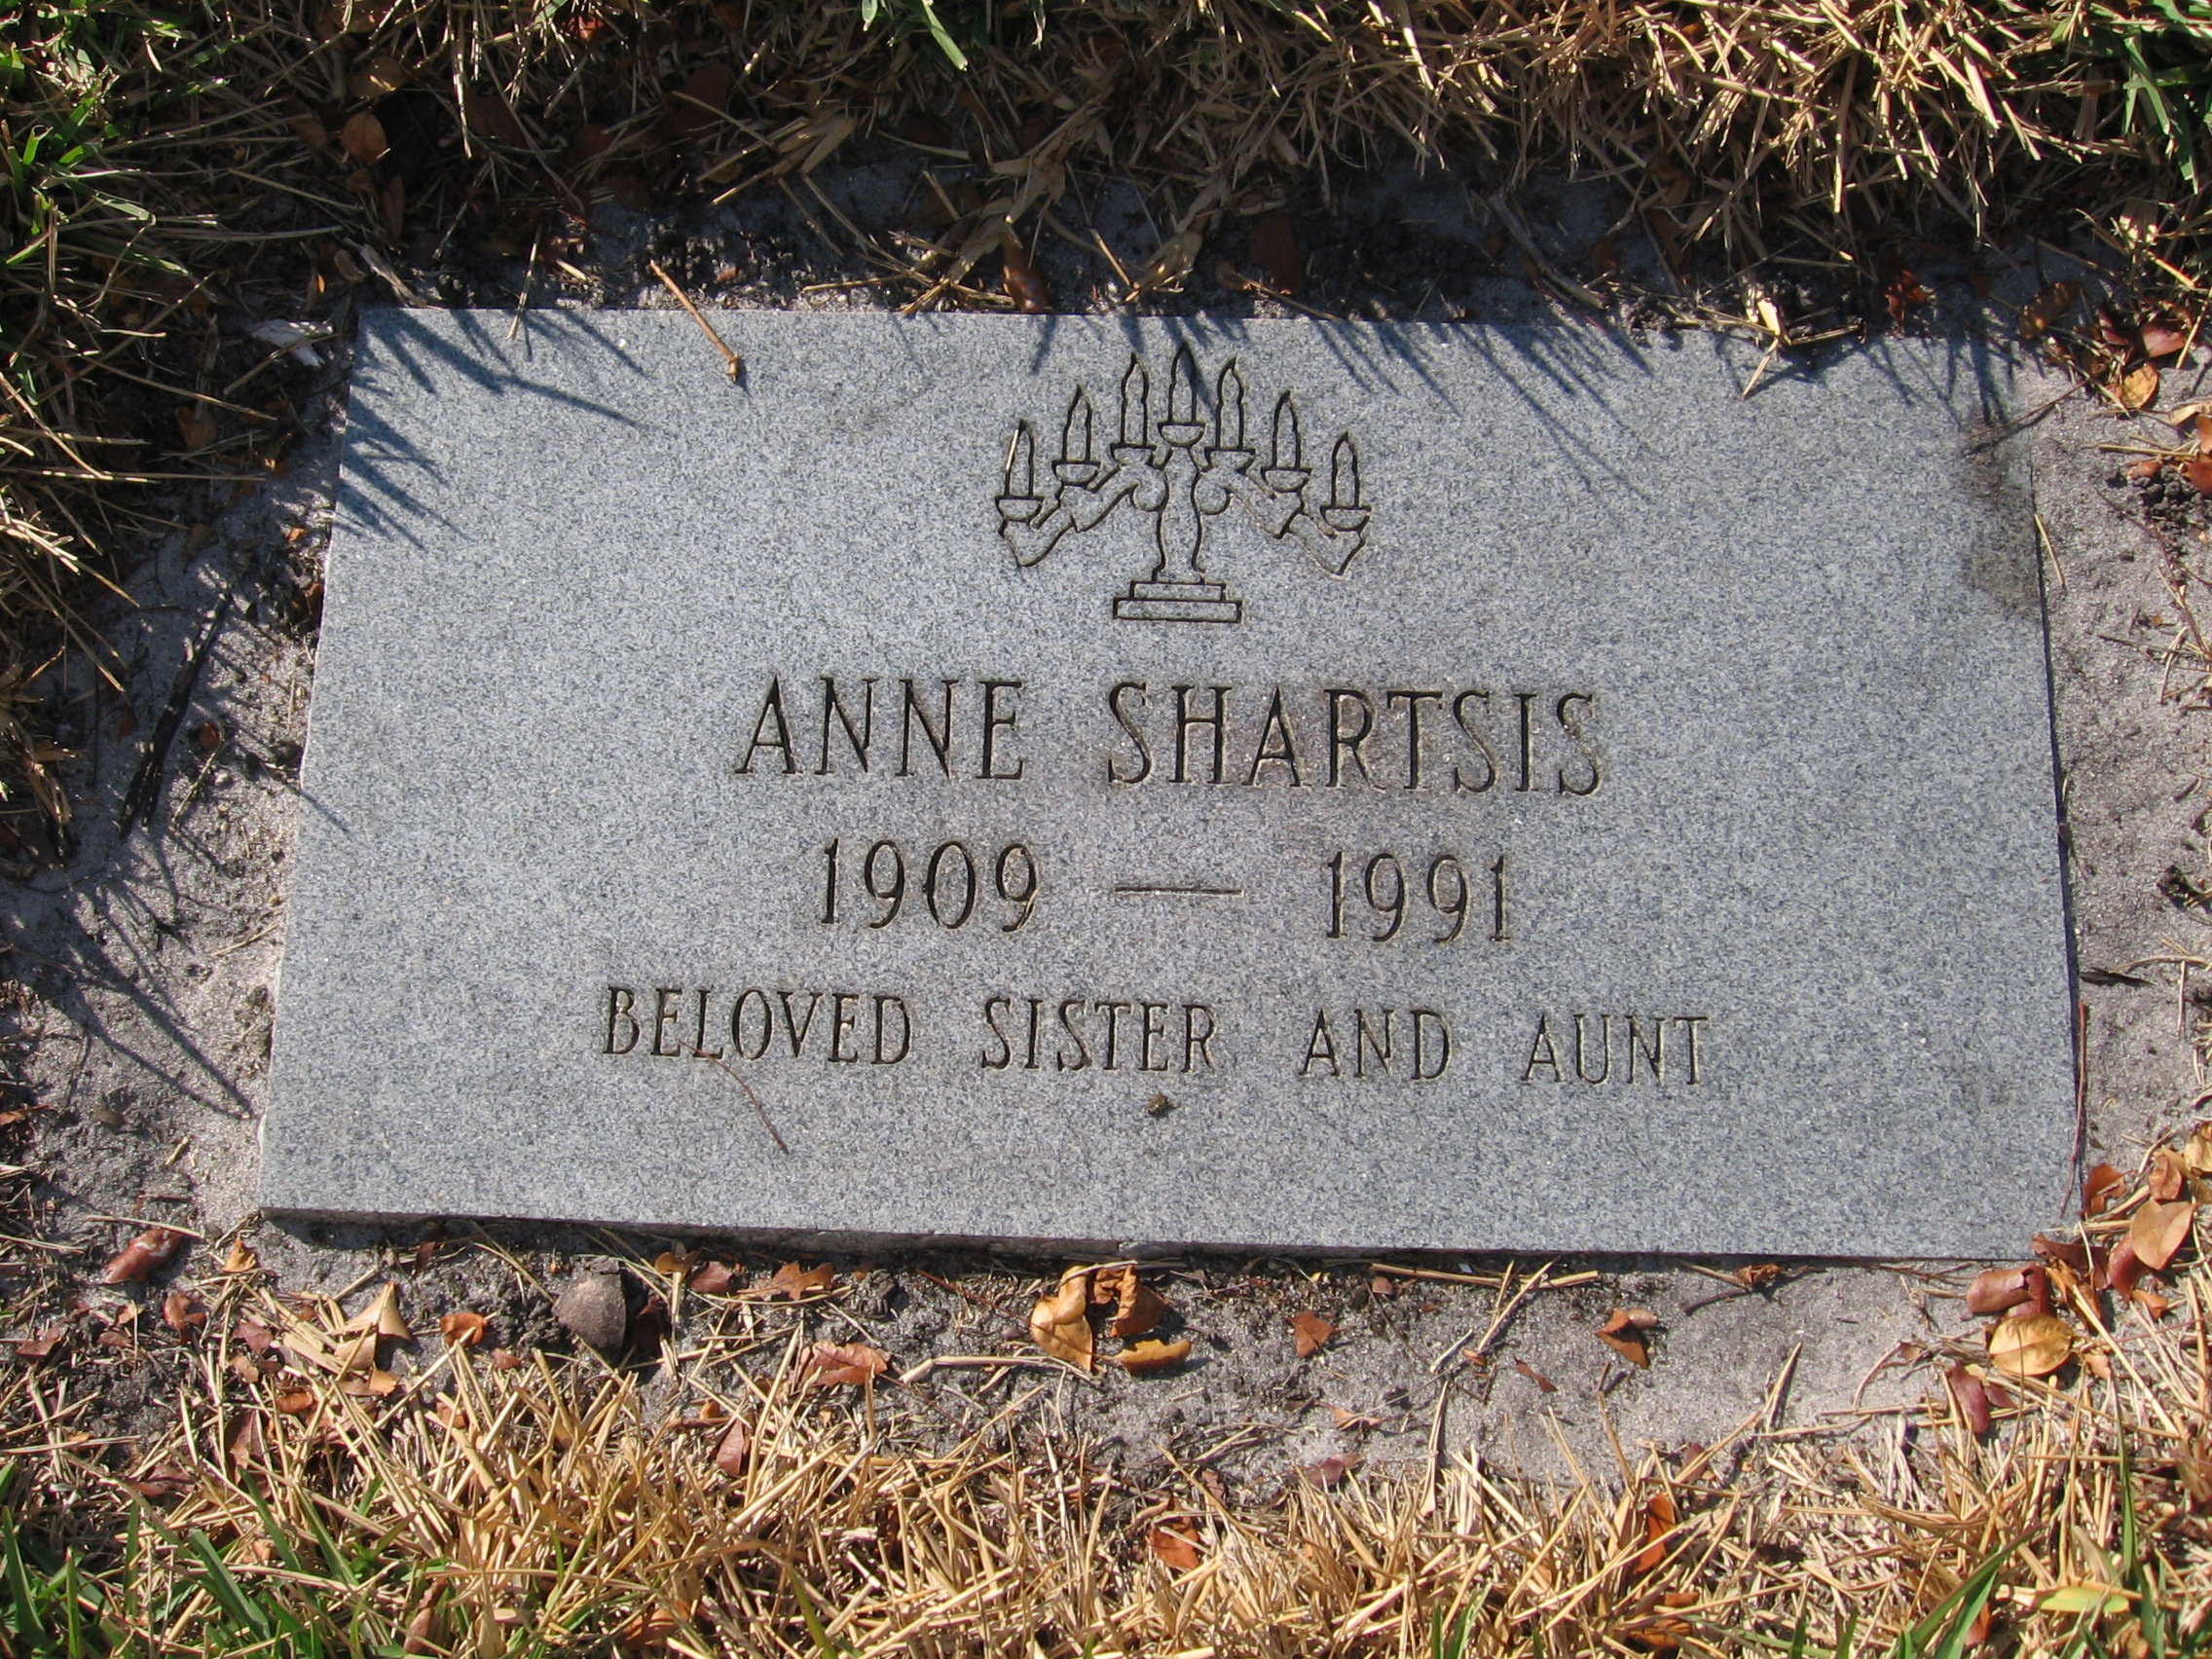 Anne Shartsis